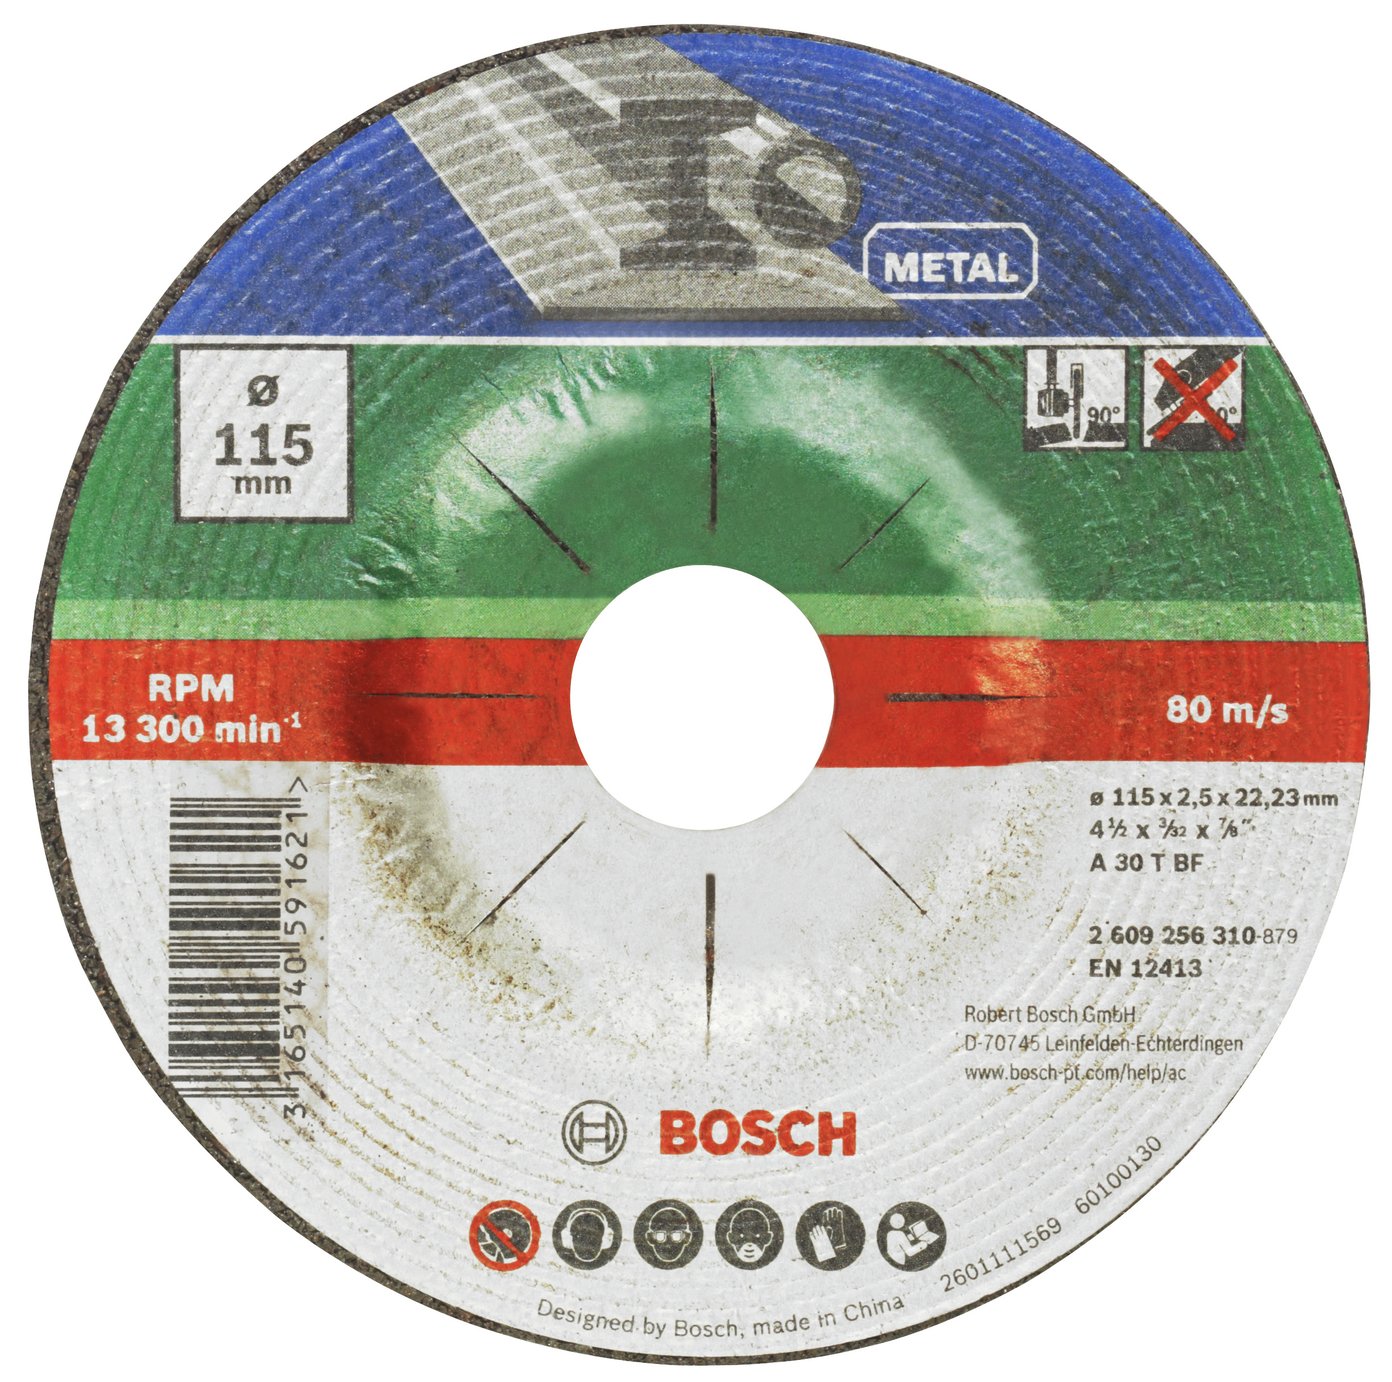 Bosch 5 Piece 115mm Metal Cutting Discs Review